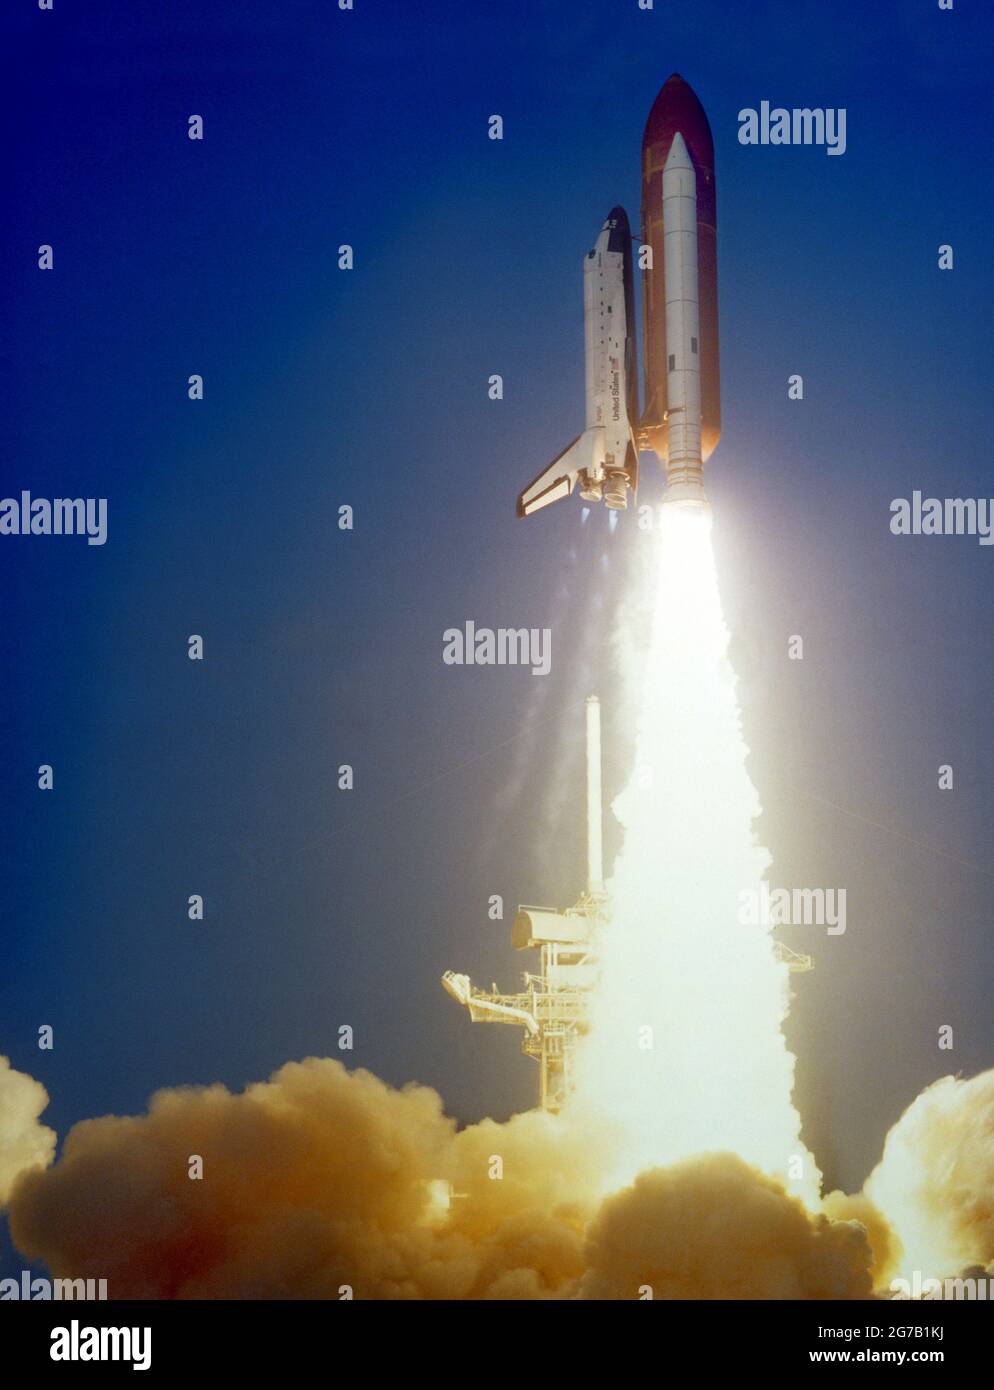 Vista del lanzamiento del Shuttle Challenger durante la misión STS 41-C. El orbitador ha despejado la plataforma de lanzamiento con una gran nube de humo que cubre la parte inferior del marco. 6 de abril de 1984 Una versión única optimizada y mejorada de una imagen de la NASA / crédito obligatorio: La NASA Foto de stock